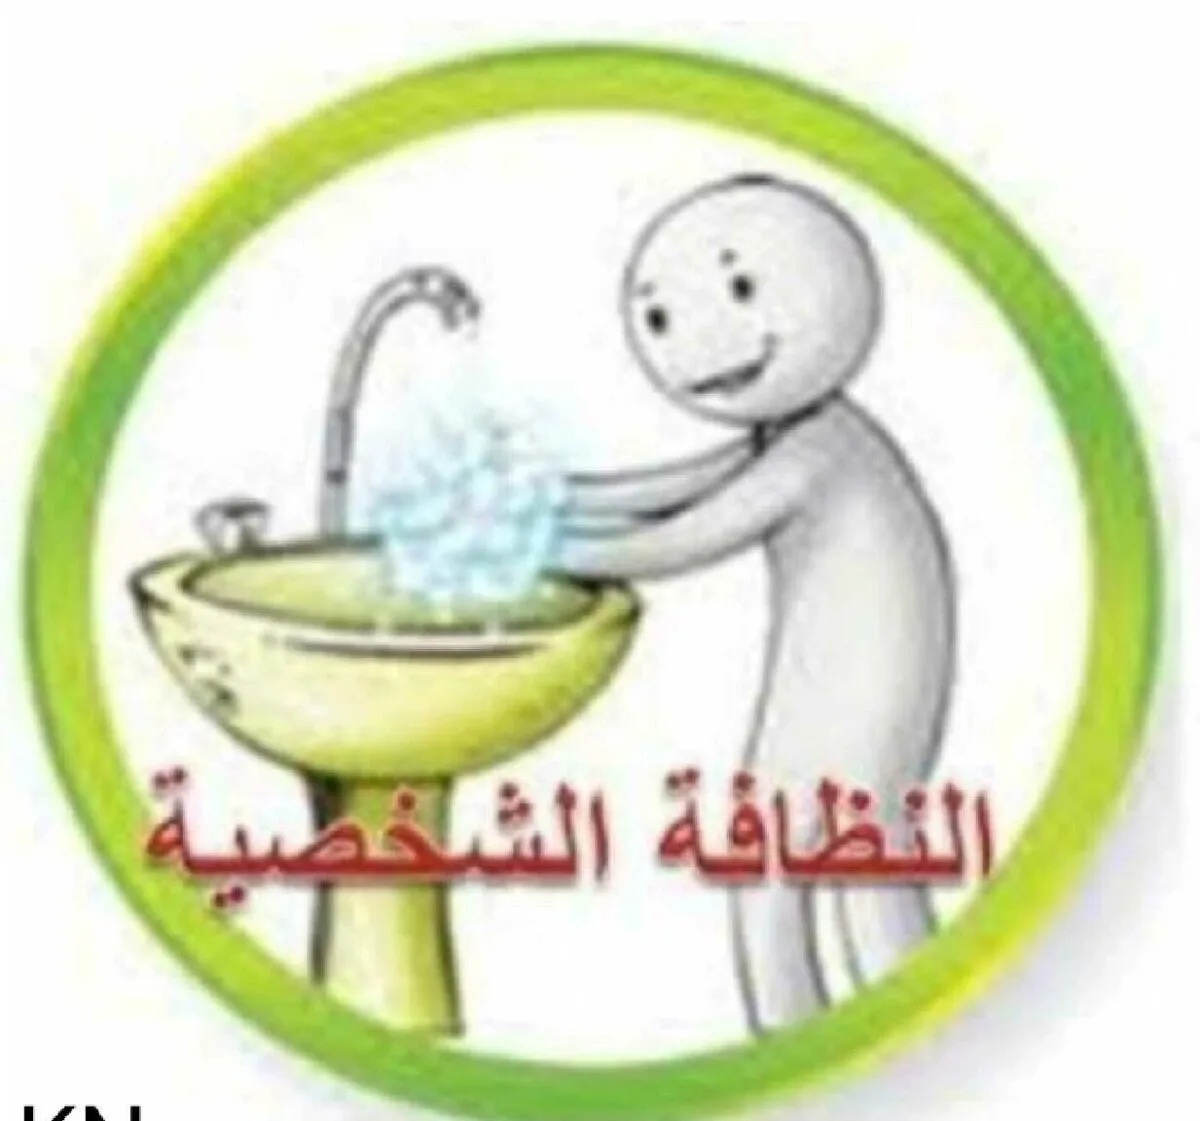 وزارة الصحة وتوعية الأردنيين على النظافة الشخصية